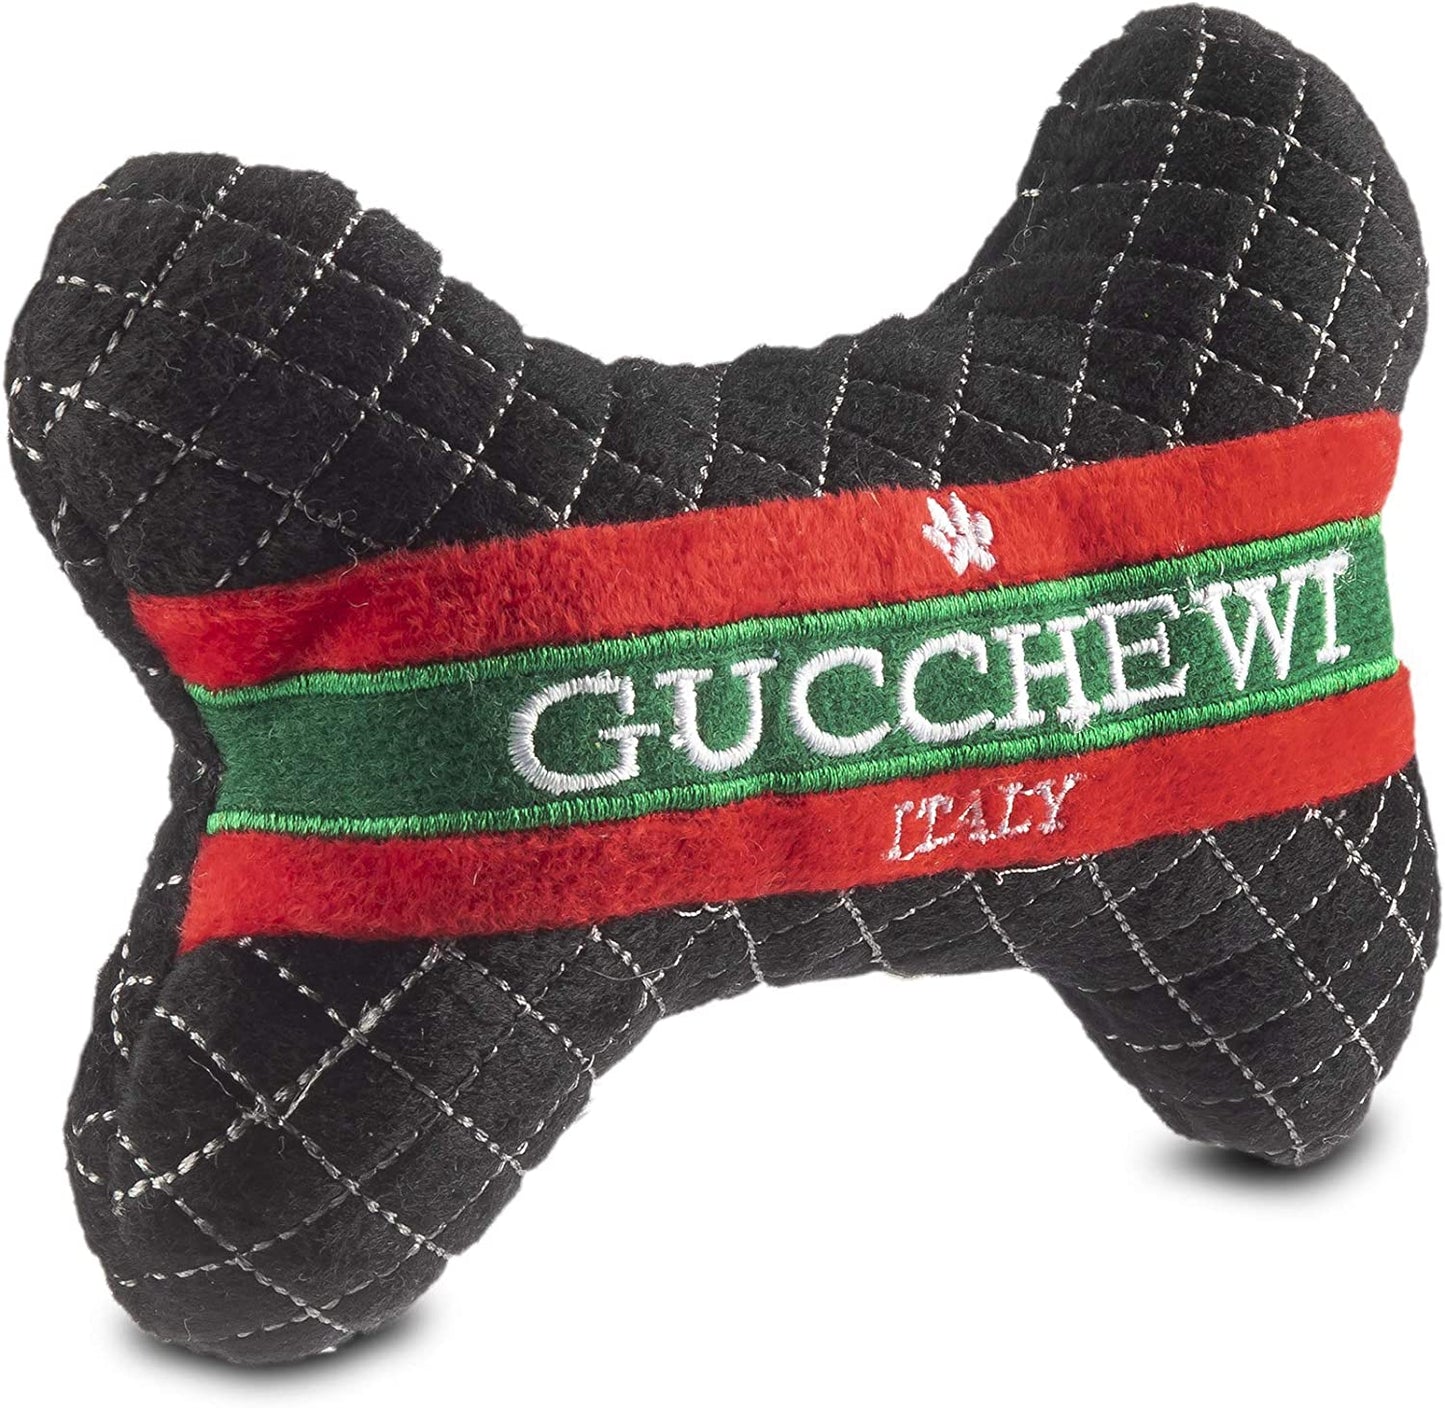 Runway Pup Collection | Unique Squeaky Plush Dog Toys – Prêt-À-Porter Dog Bones, Balls & More